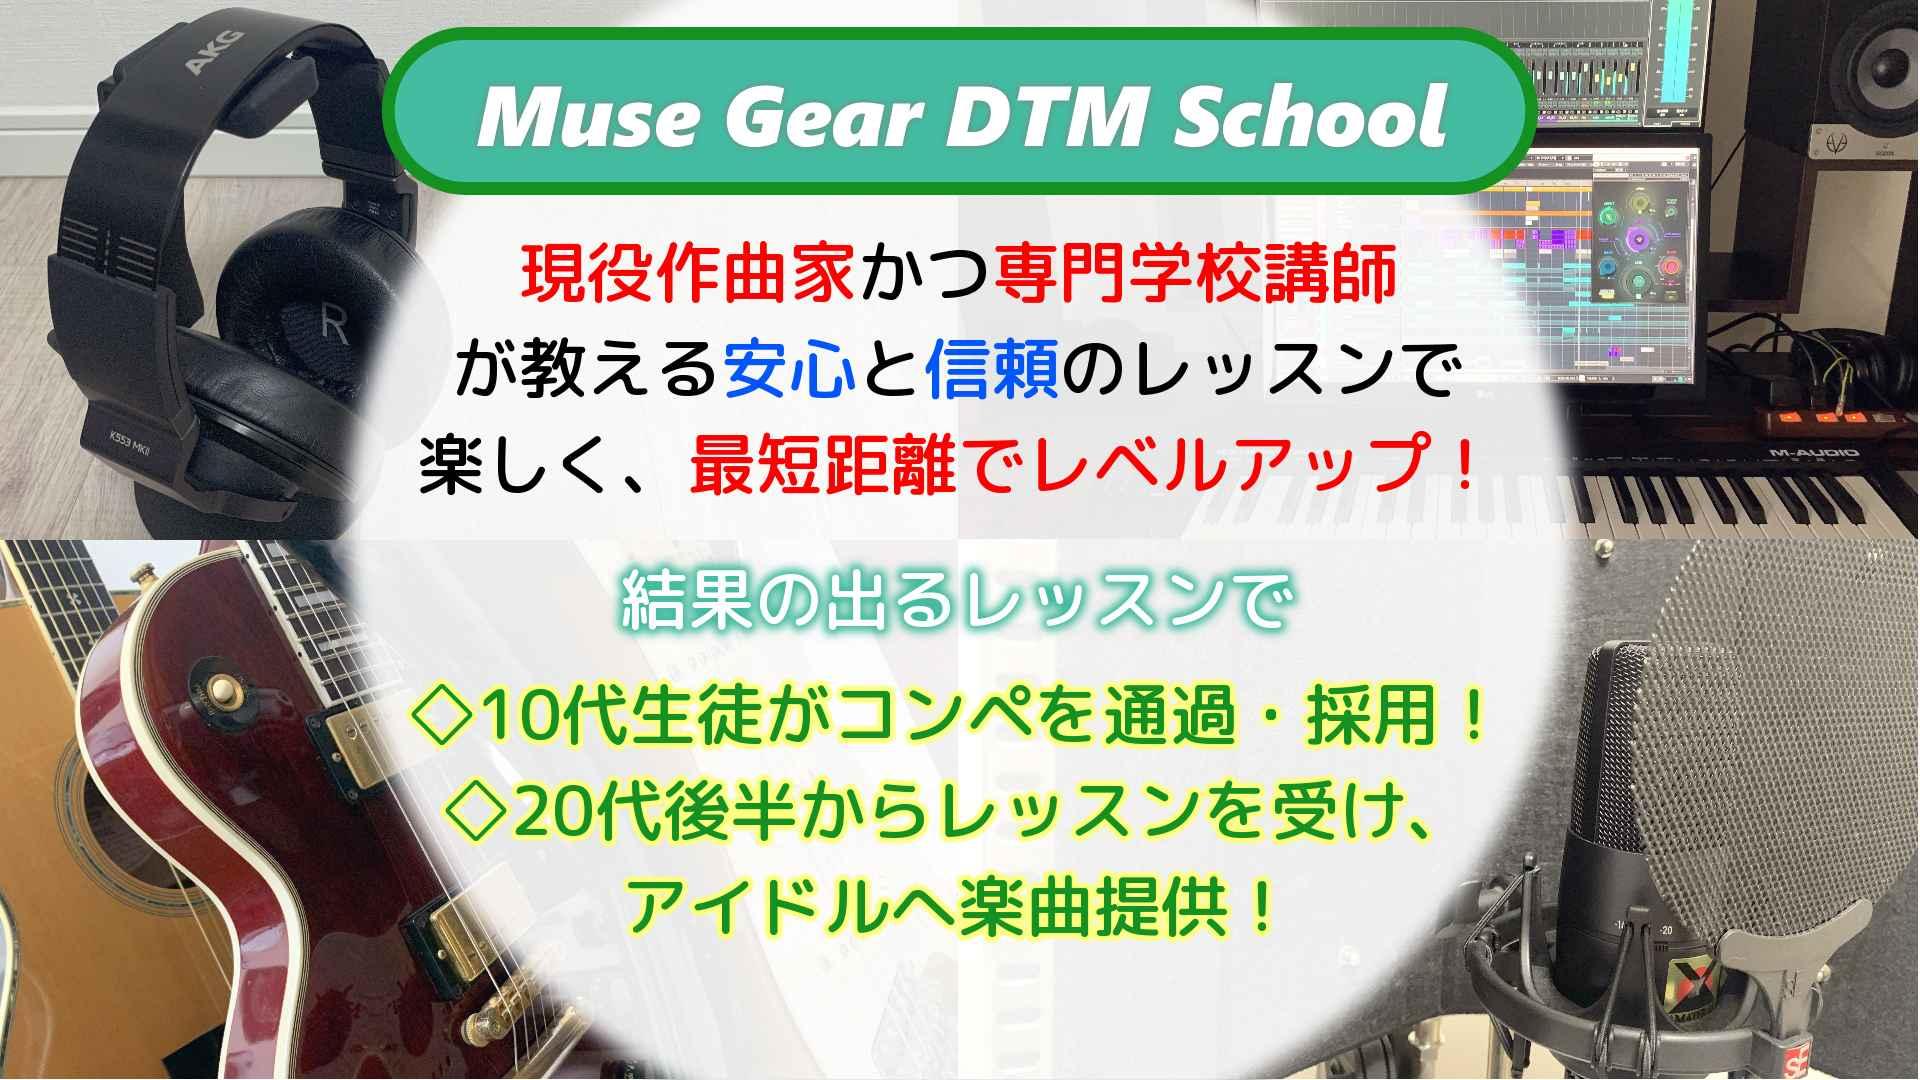 Muse Gear DTM School